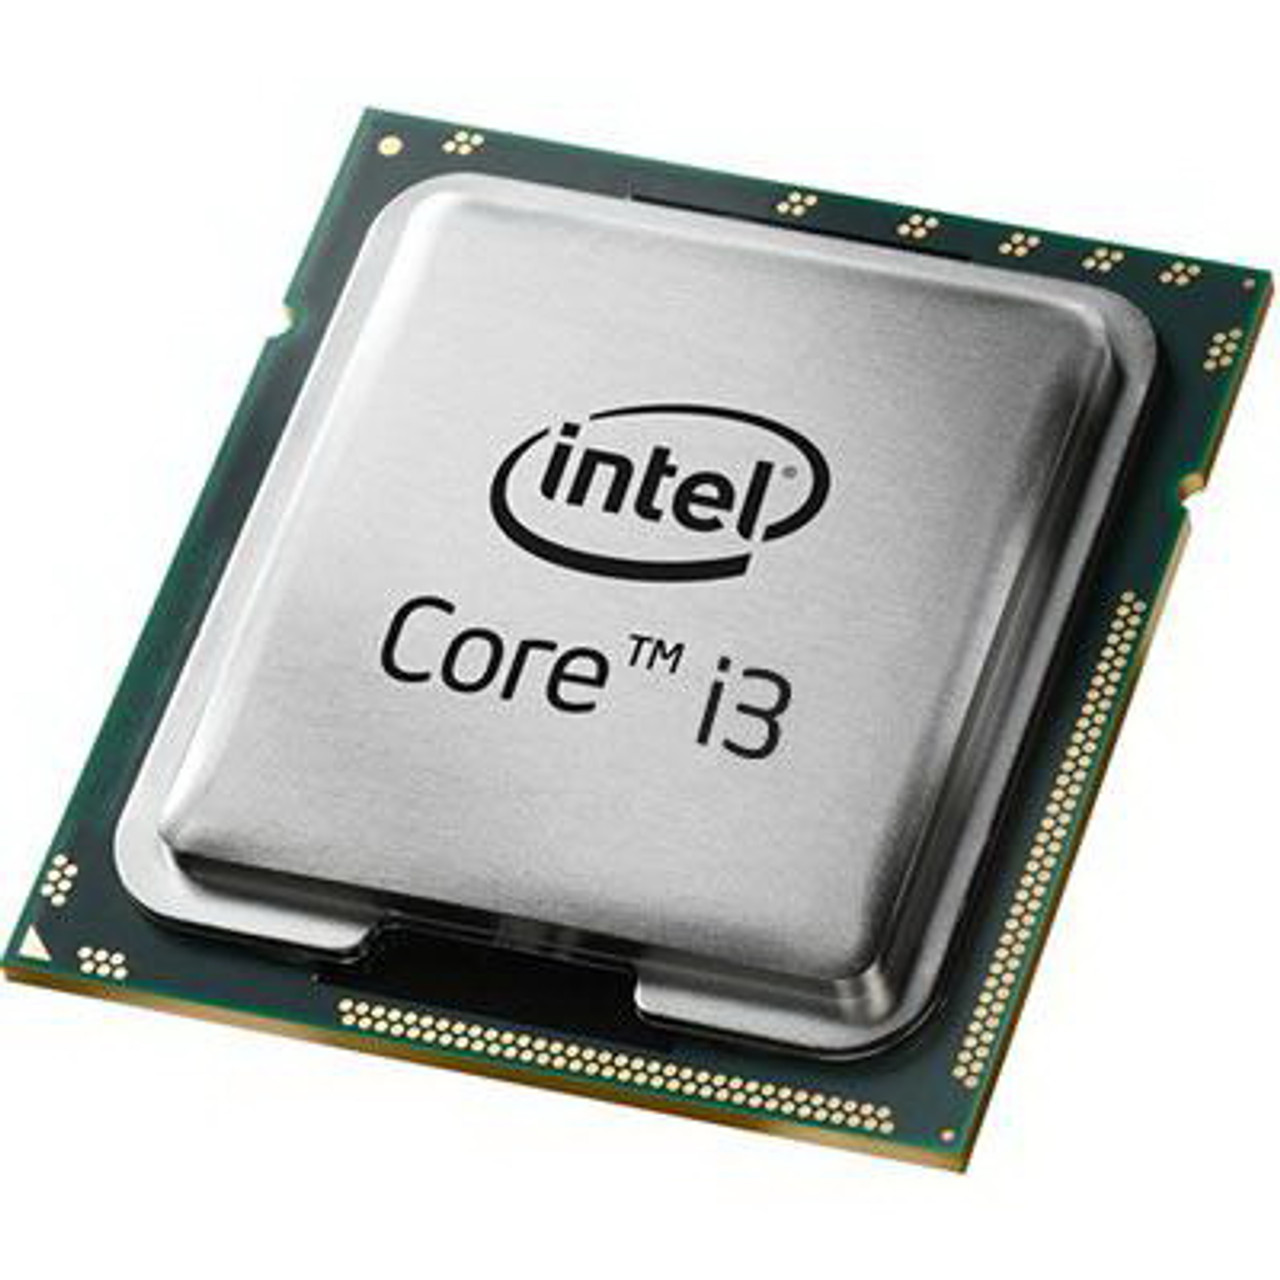 1356134 Intel Core i3-2120T Dual Core 2.60GHz 5.00GT/s DMI 3MB L3 Cache Socket LGA1155 Desktop Processor